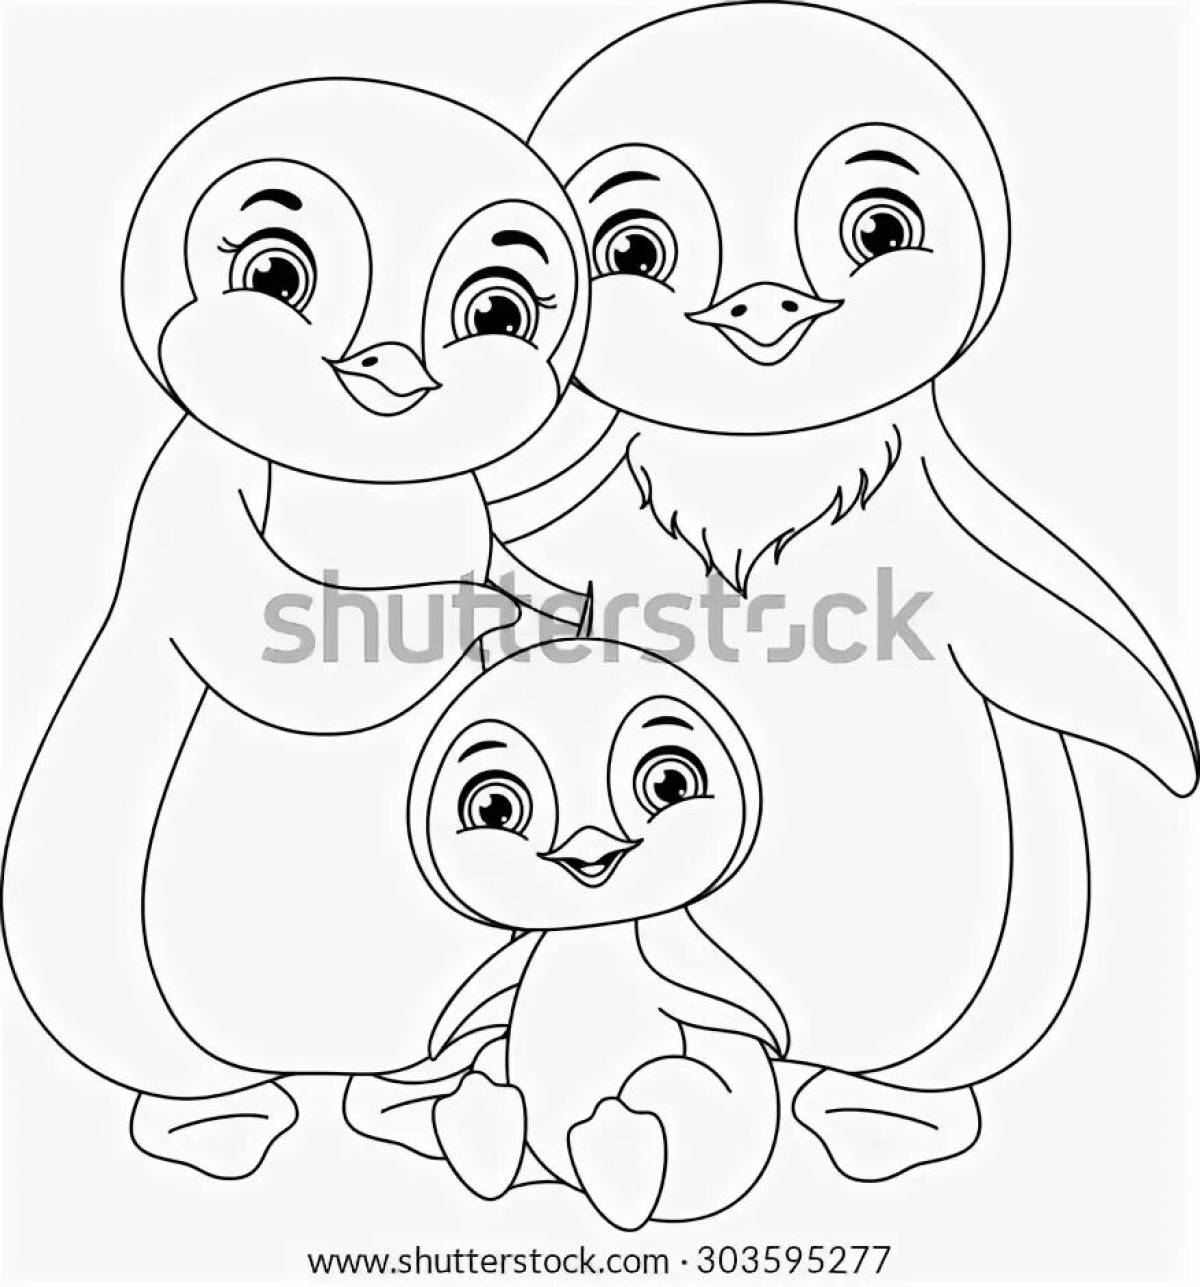 Развлекательная раскраска пингвинов для детей